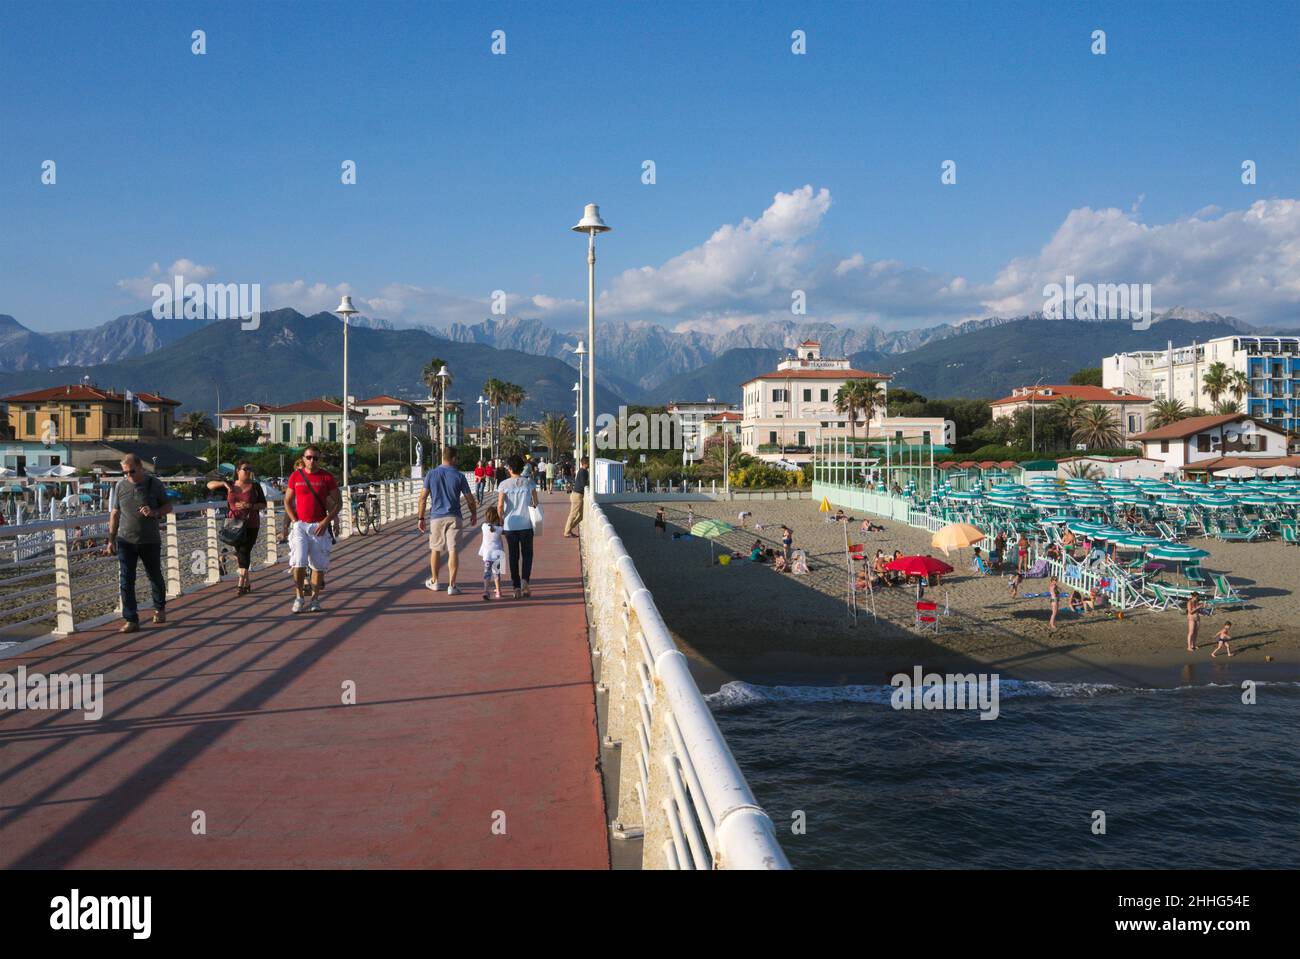 pier and beachfront in Marina di Massa, Versilia, Tuscany, Italy Stock Photo